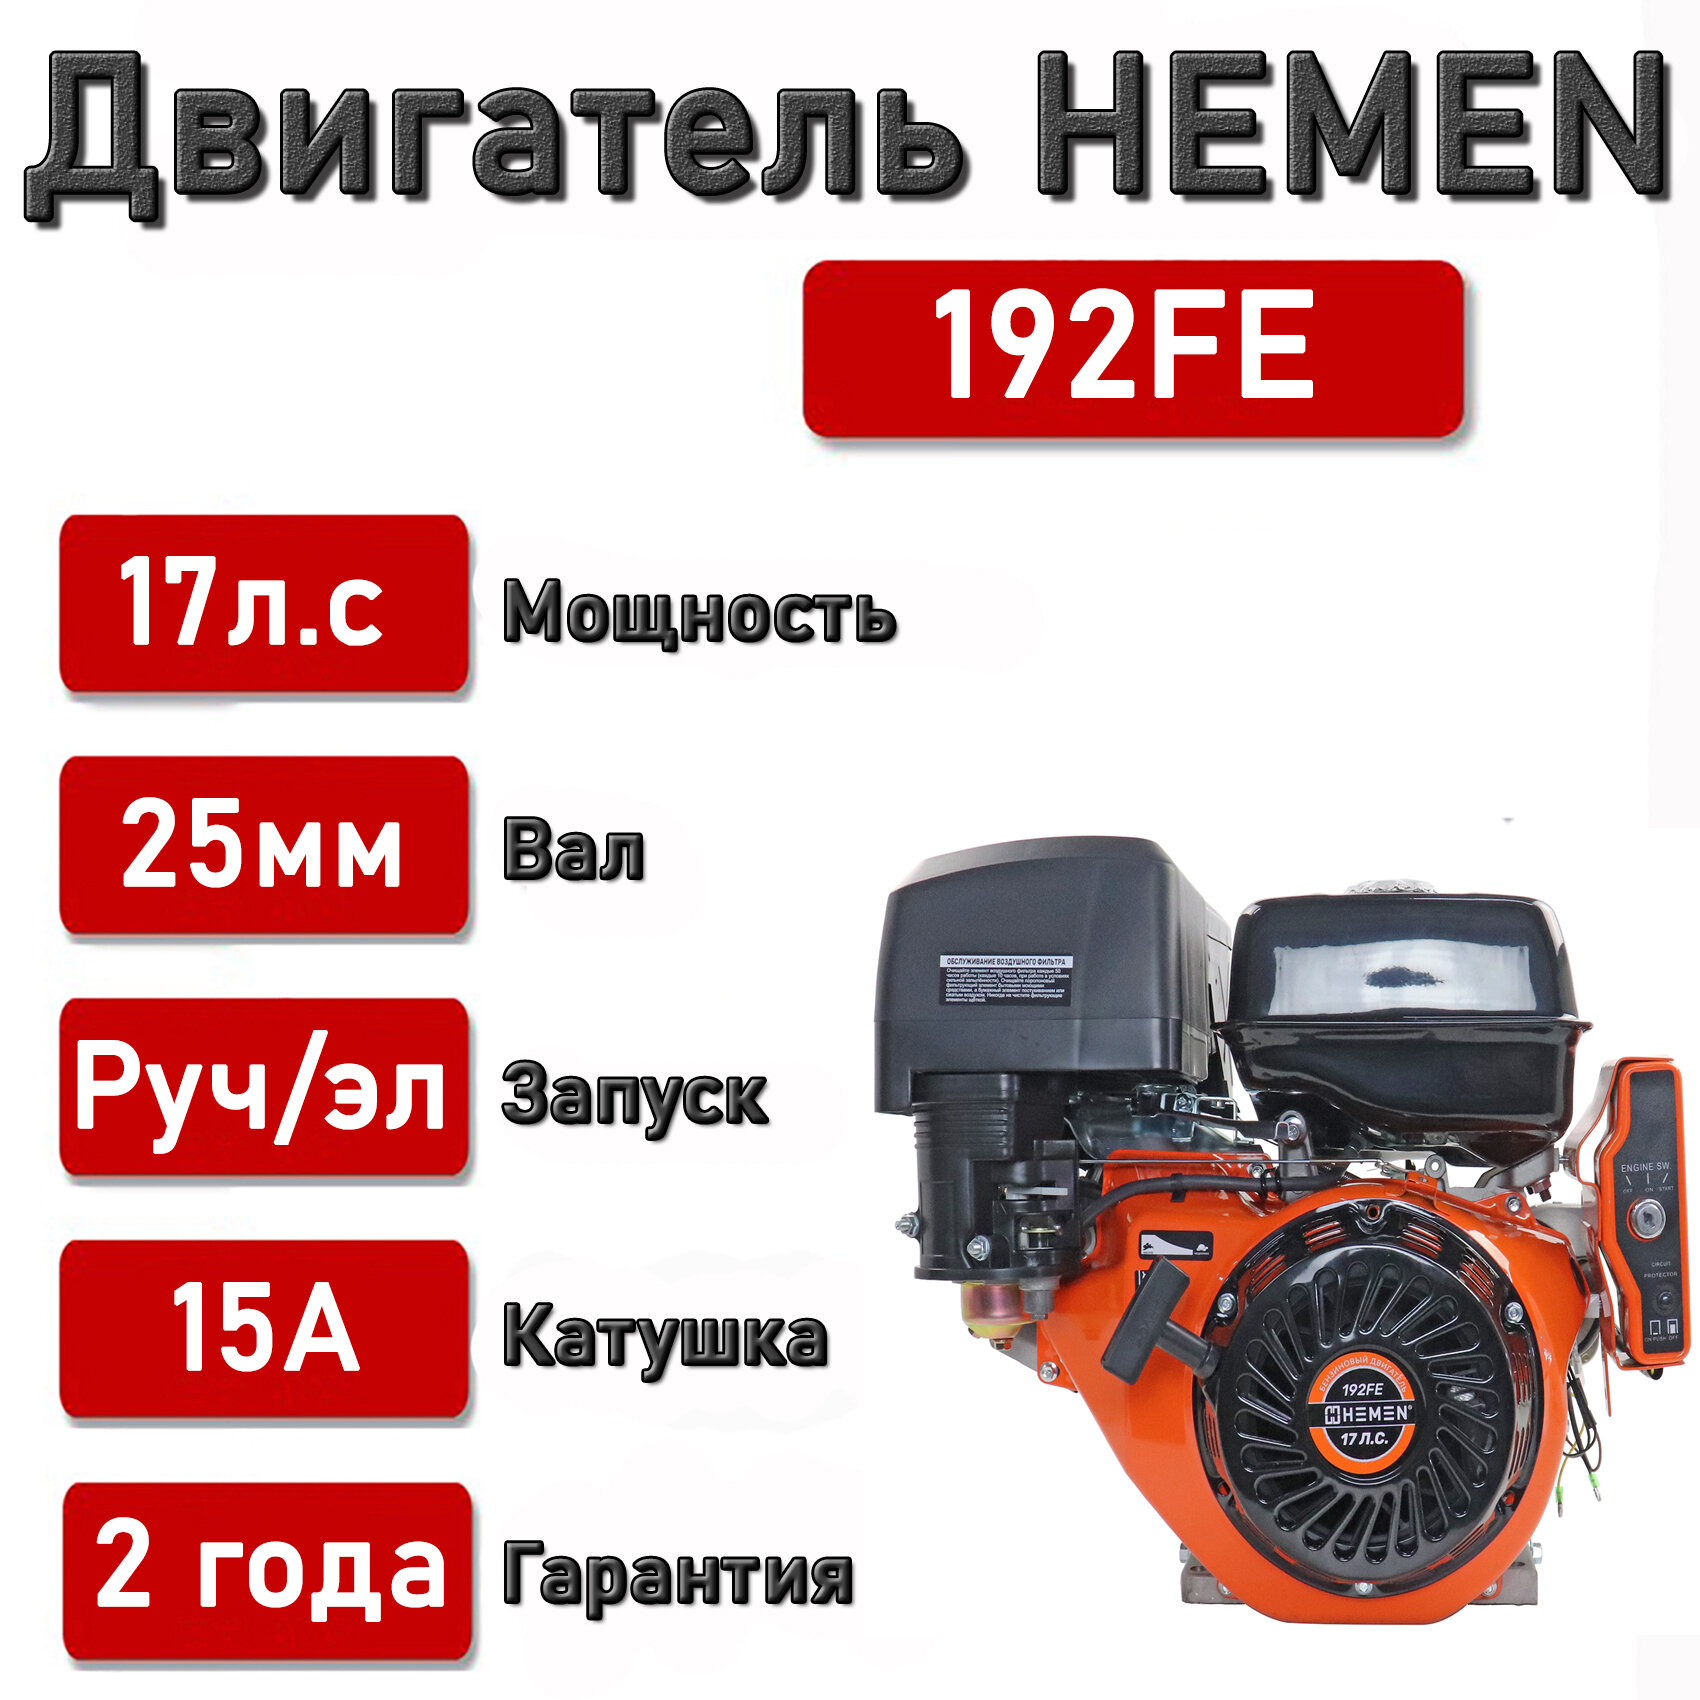 Двигатель HEMEN 170 л. с. с катушкой 15А180Вт 192FE (445 см3) электростартер вал 25 мм